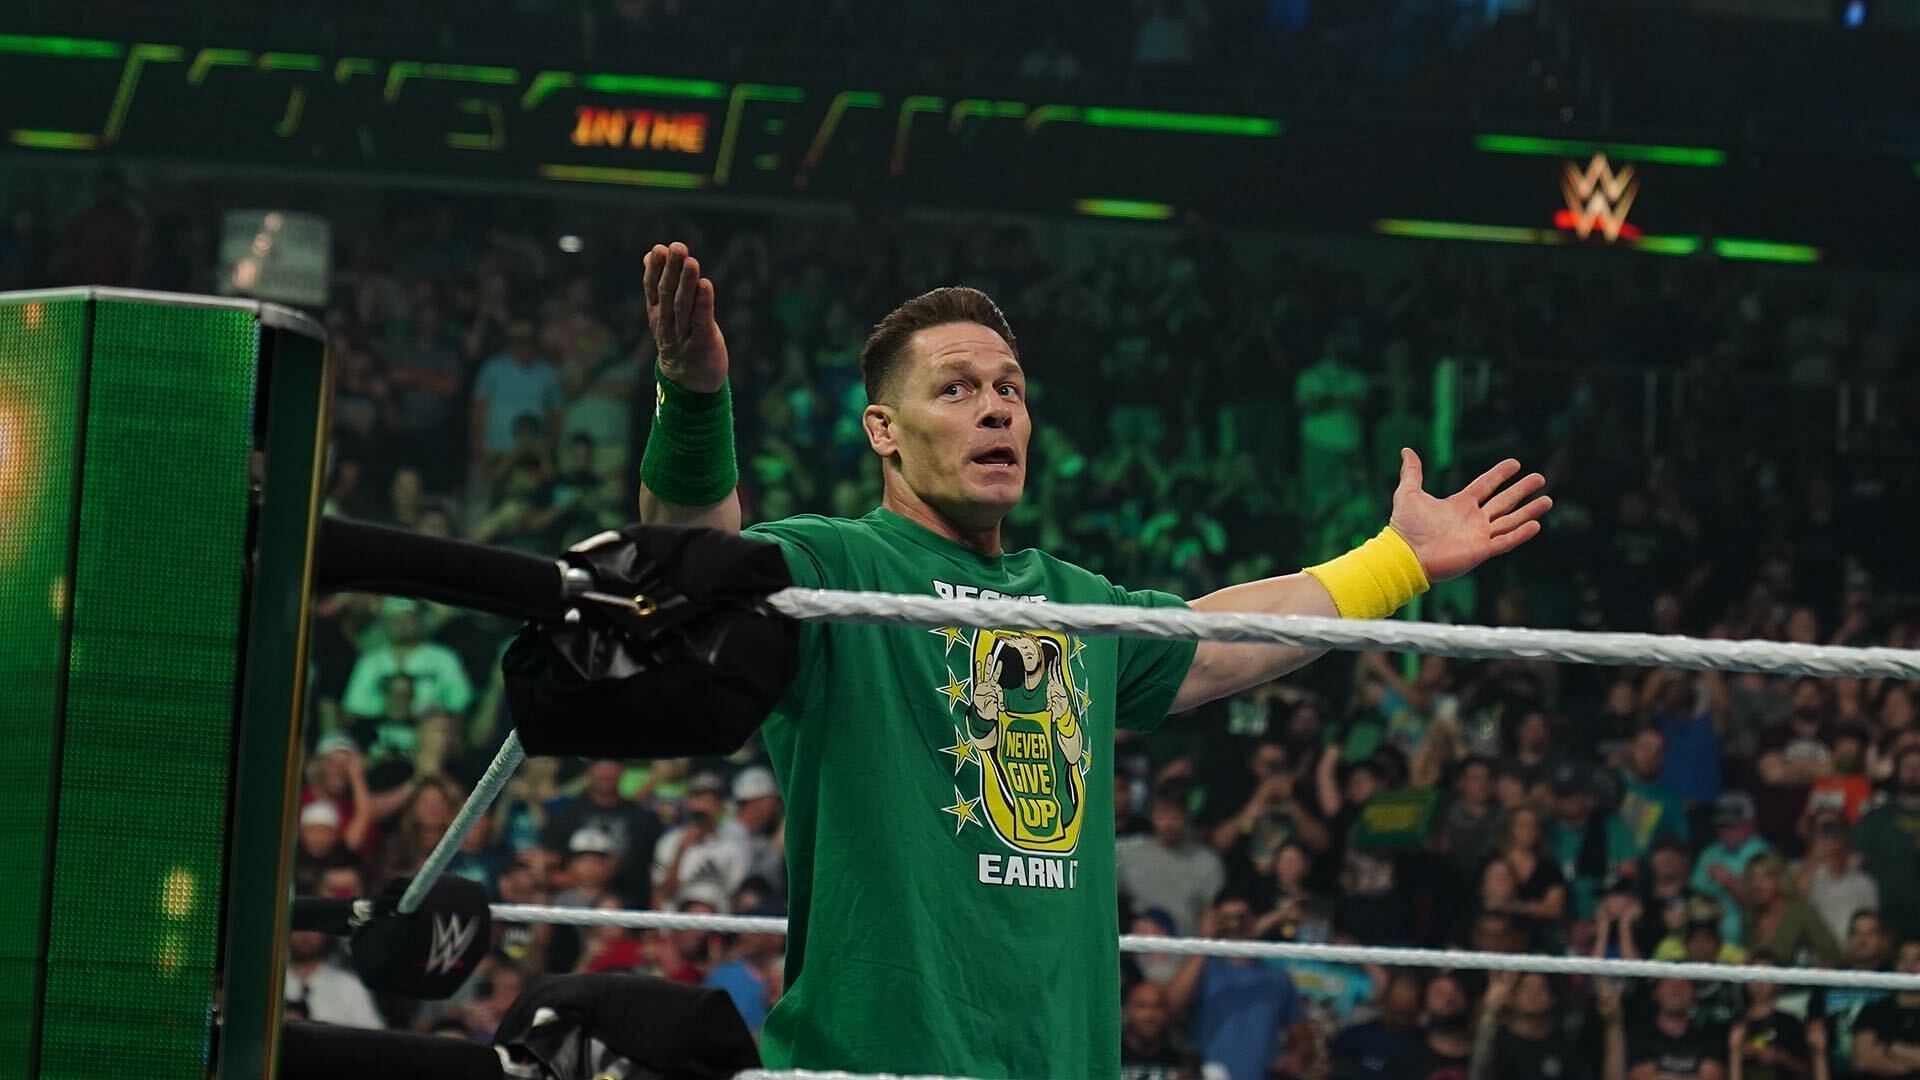 John Cena returned in July 2021.